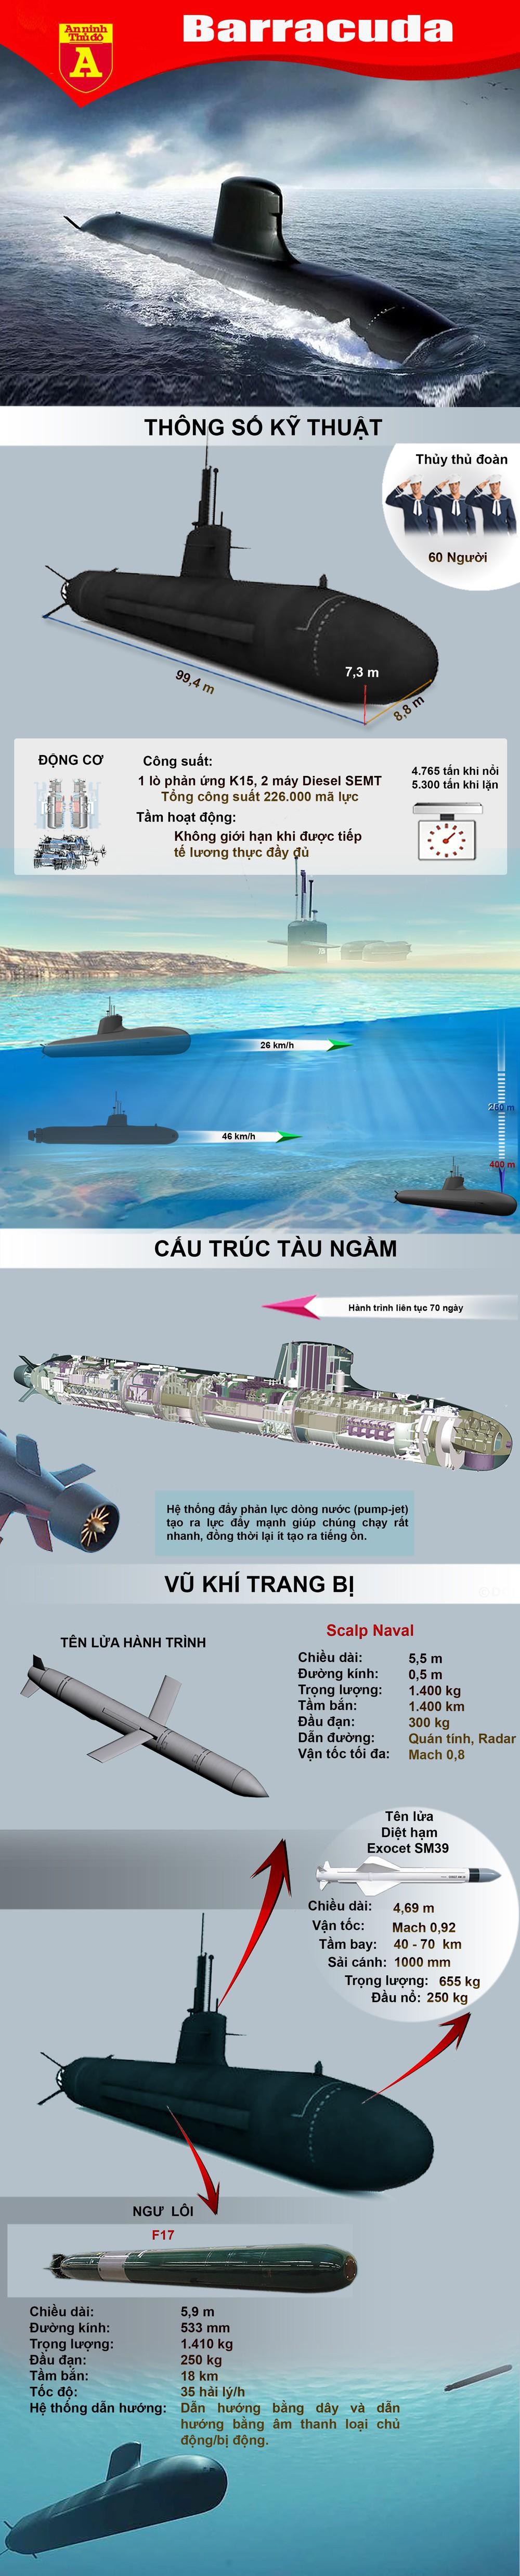 Khả năng tấn công mặt đất, trinh sát, triển khai biệt kích của tàu ngầm Barracuda  - Ảnh 1